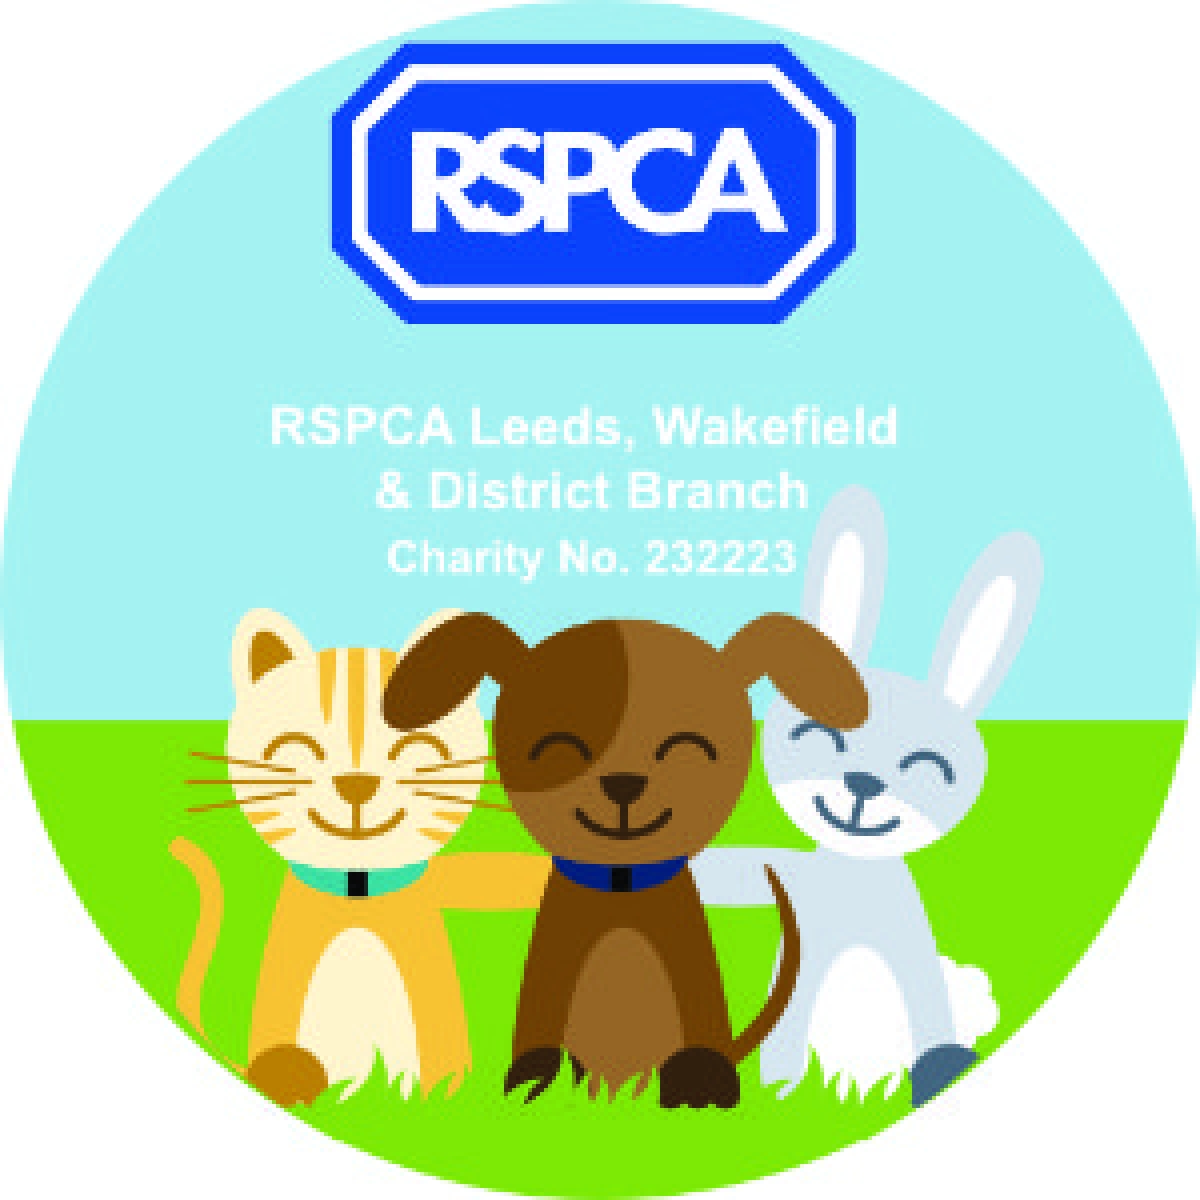 RSPCA Leeds, Wakefield & District Branch eCards